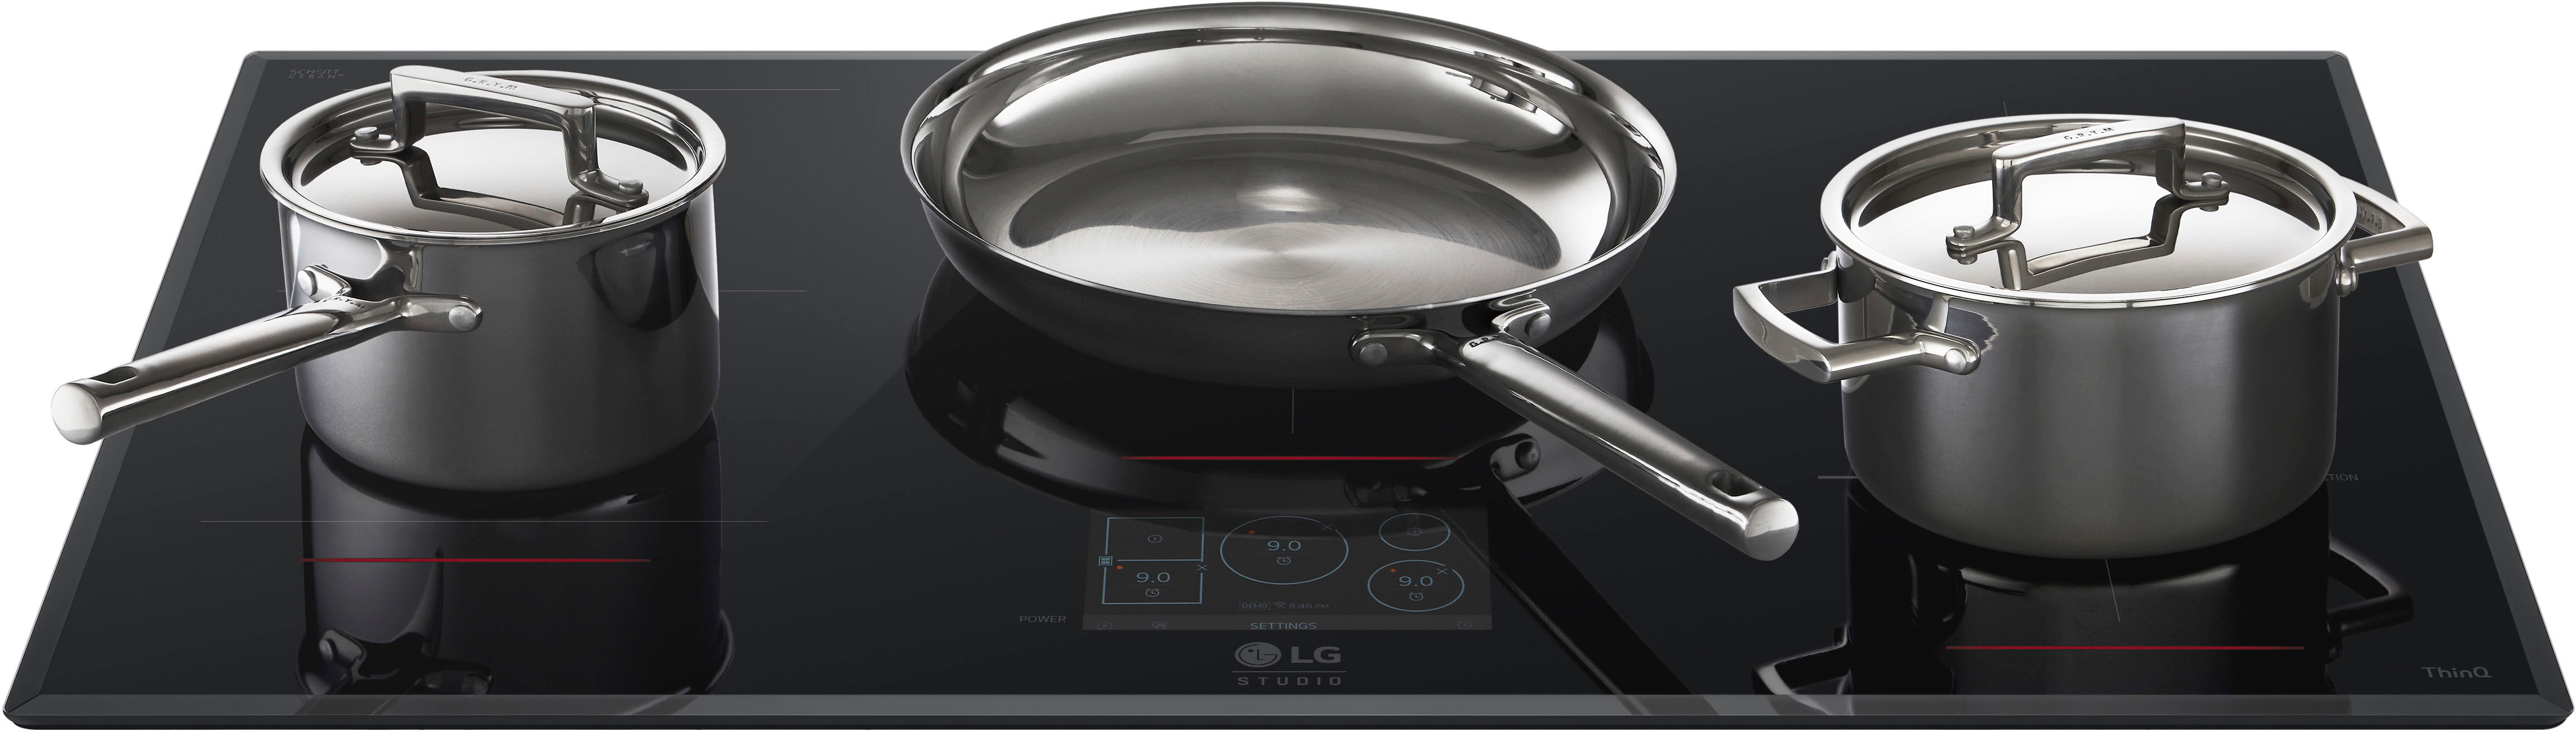 LG STUDIO 36” UltraHeat™ Gas Cooktop with EasyClean®